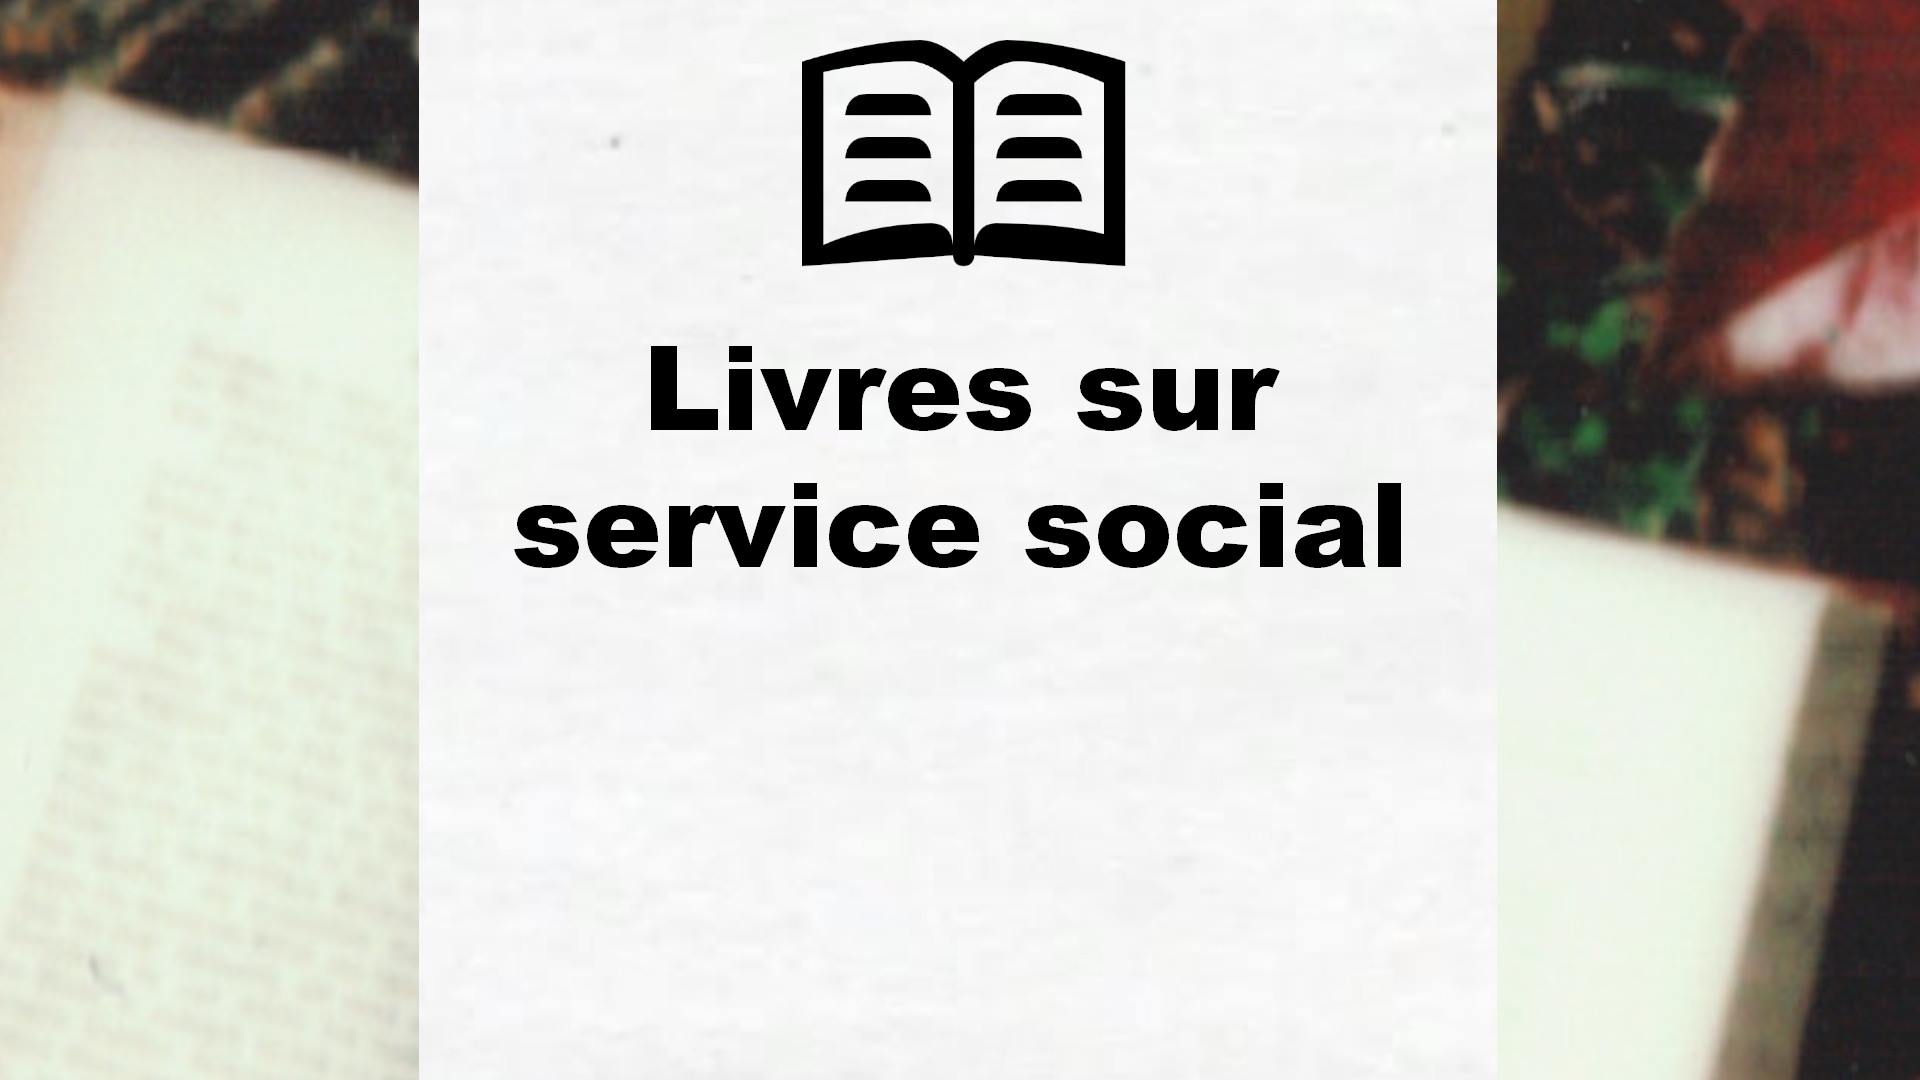 Livres sur service social